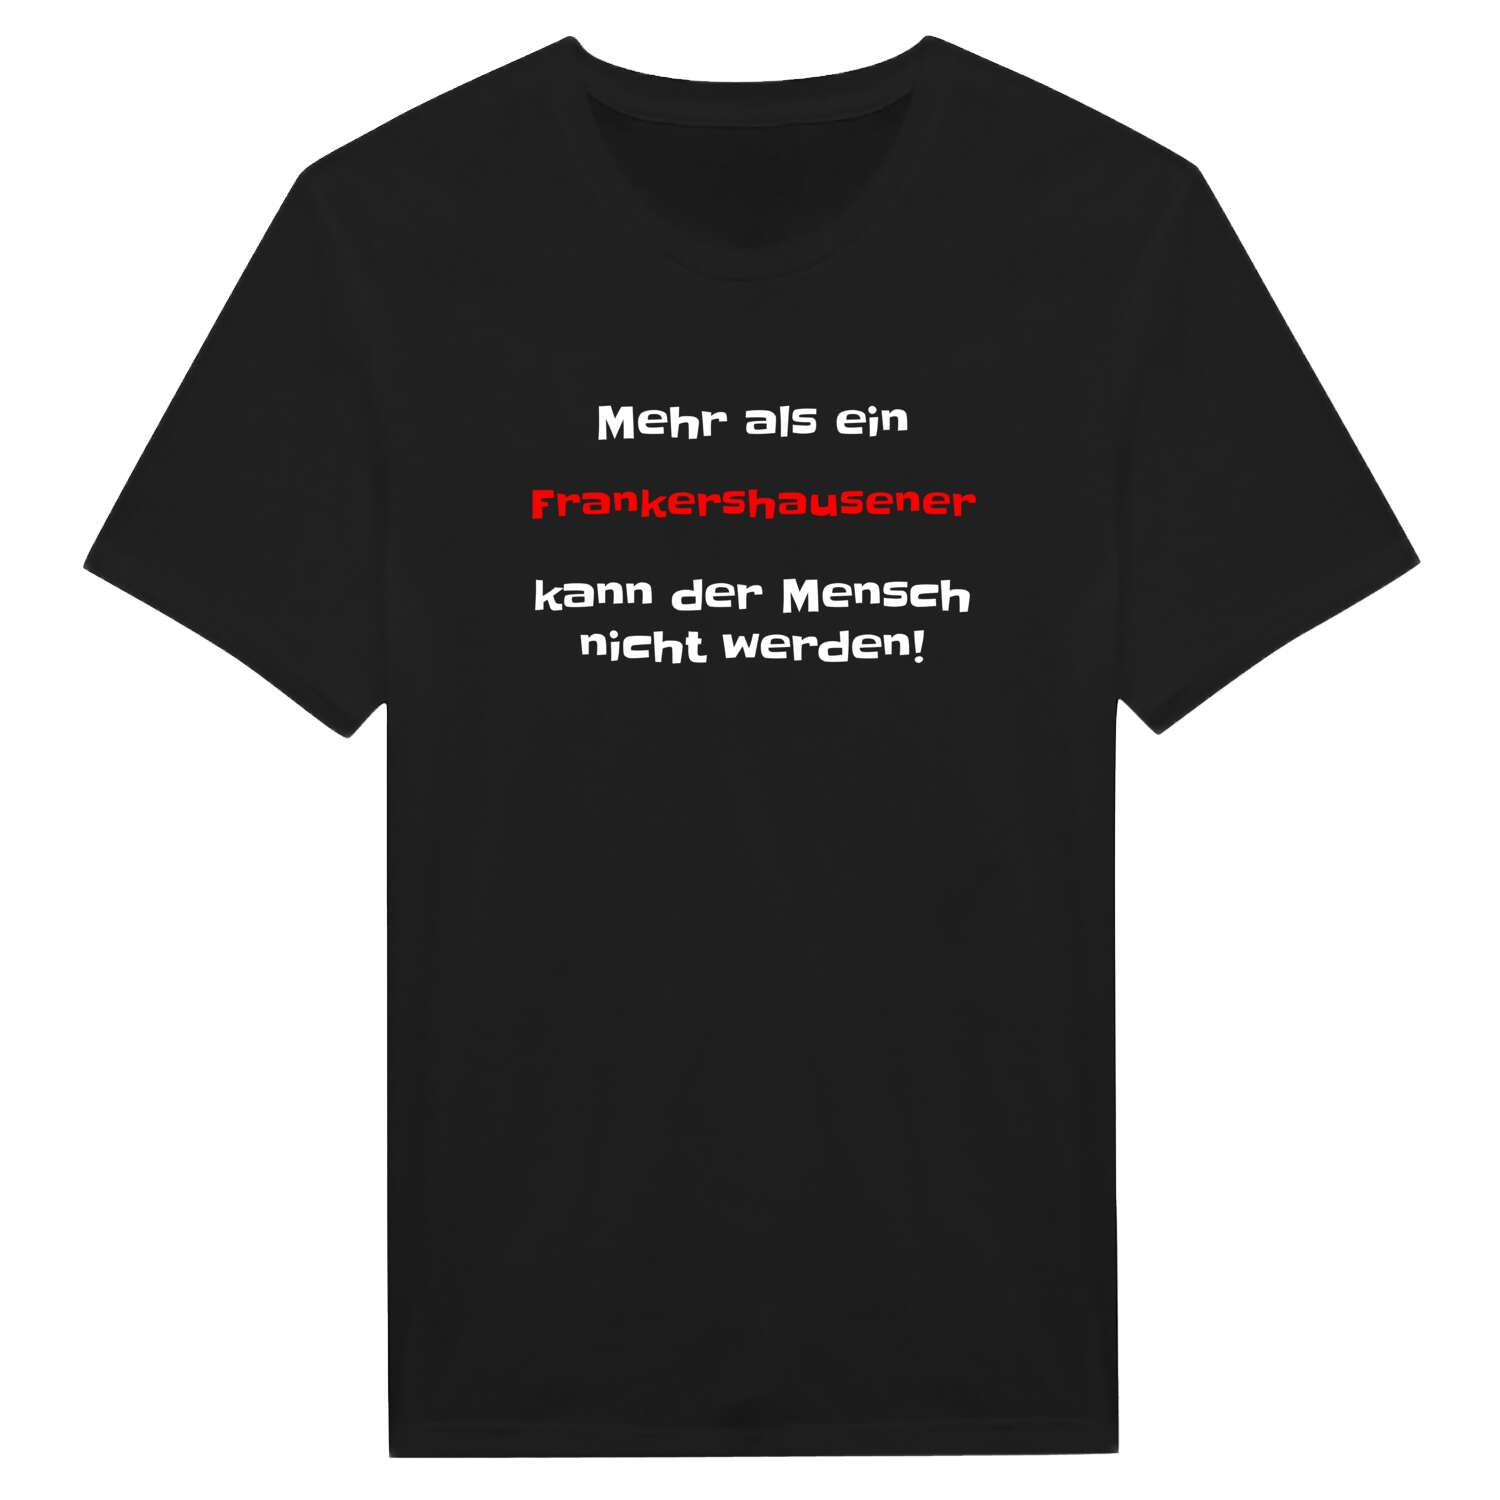 Frankershausen T-Shirt »Mehr als ein«